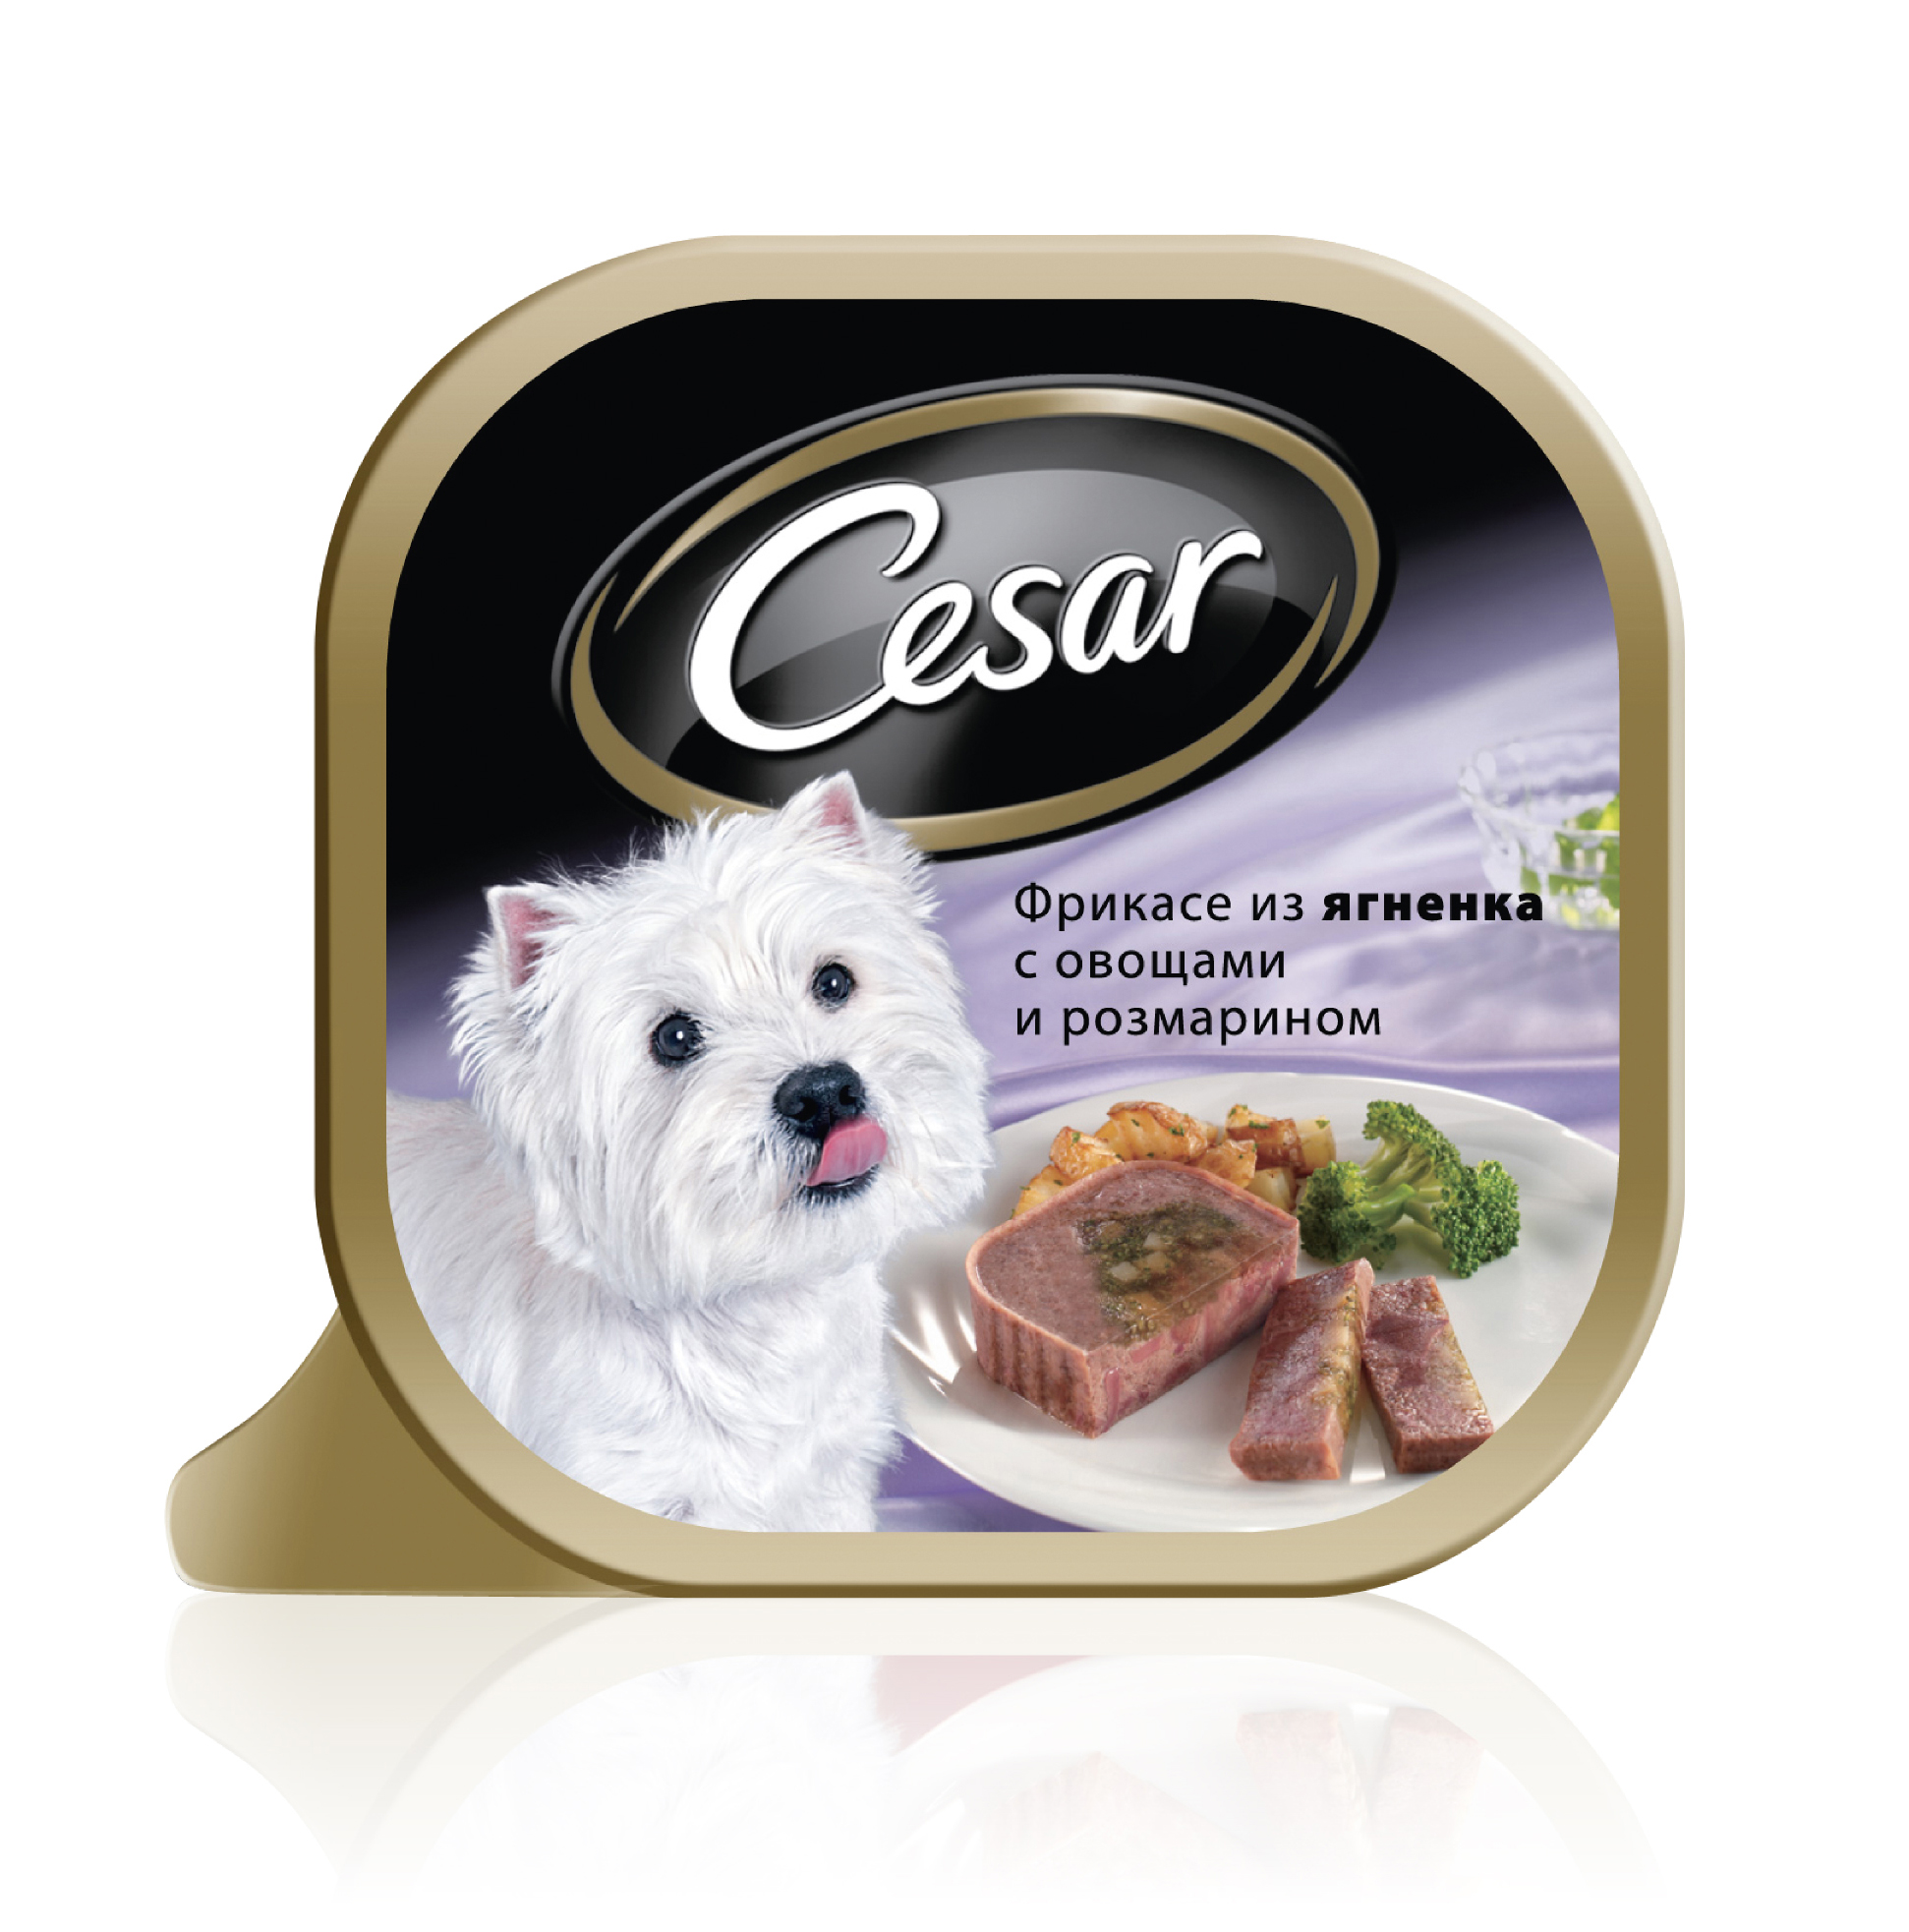 Готовый корм для собак. Влажный корм для собак Cesar из говядины с овощами 100г. Cesar консервы для собак. Влажный корм для собак Cesar.